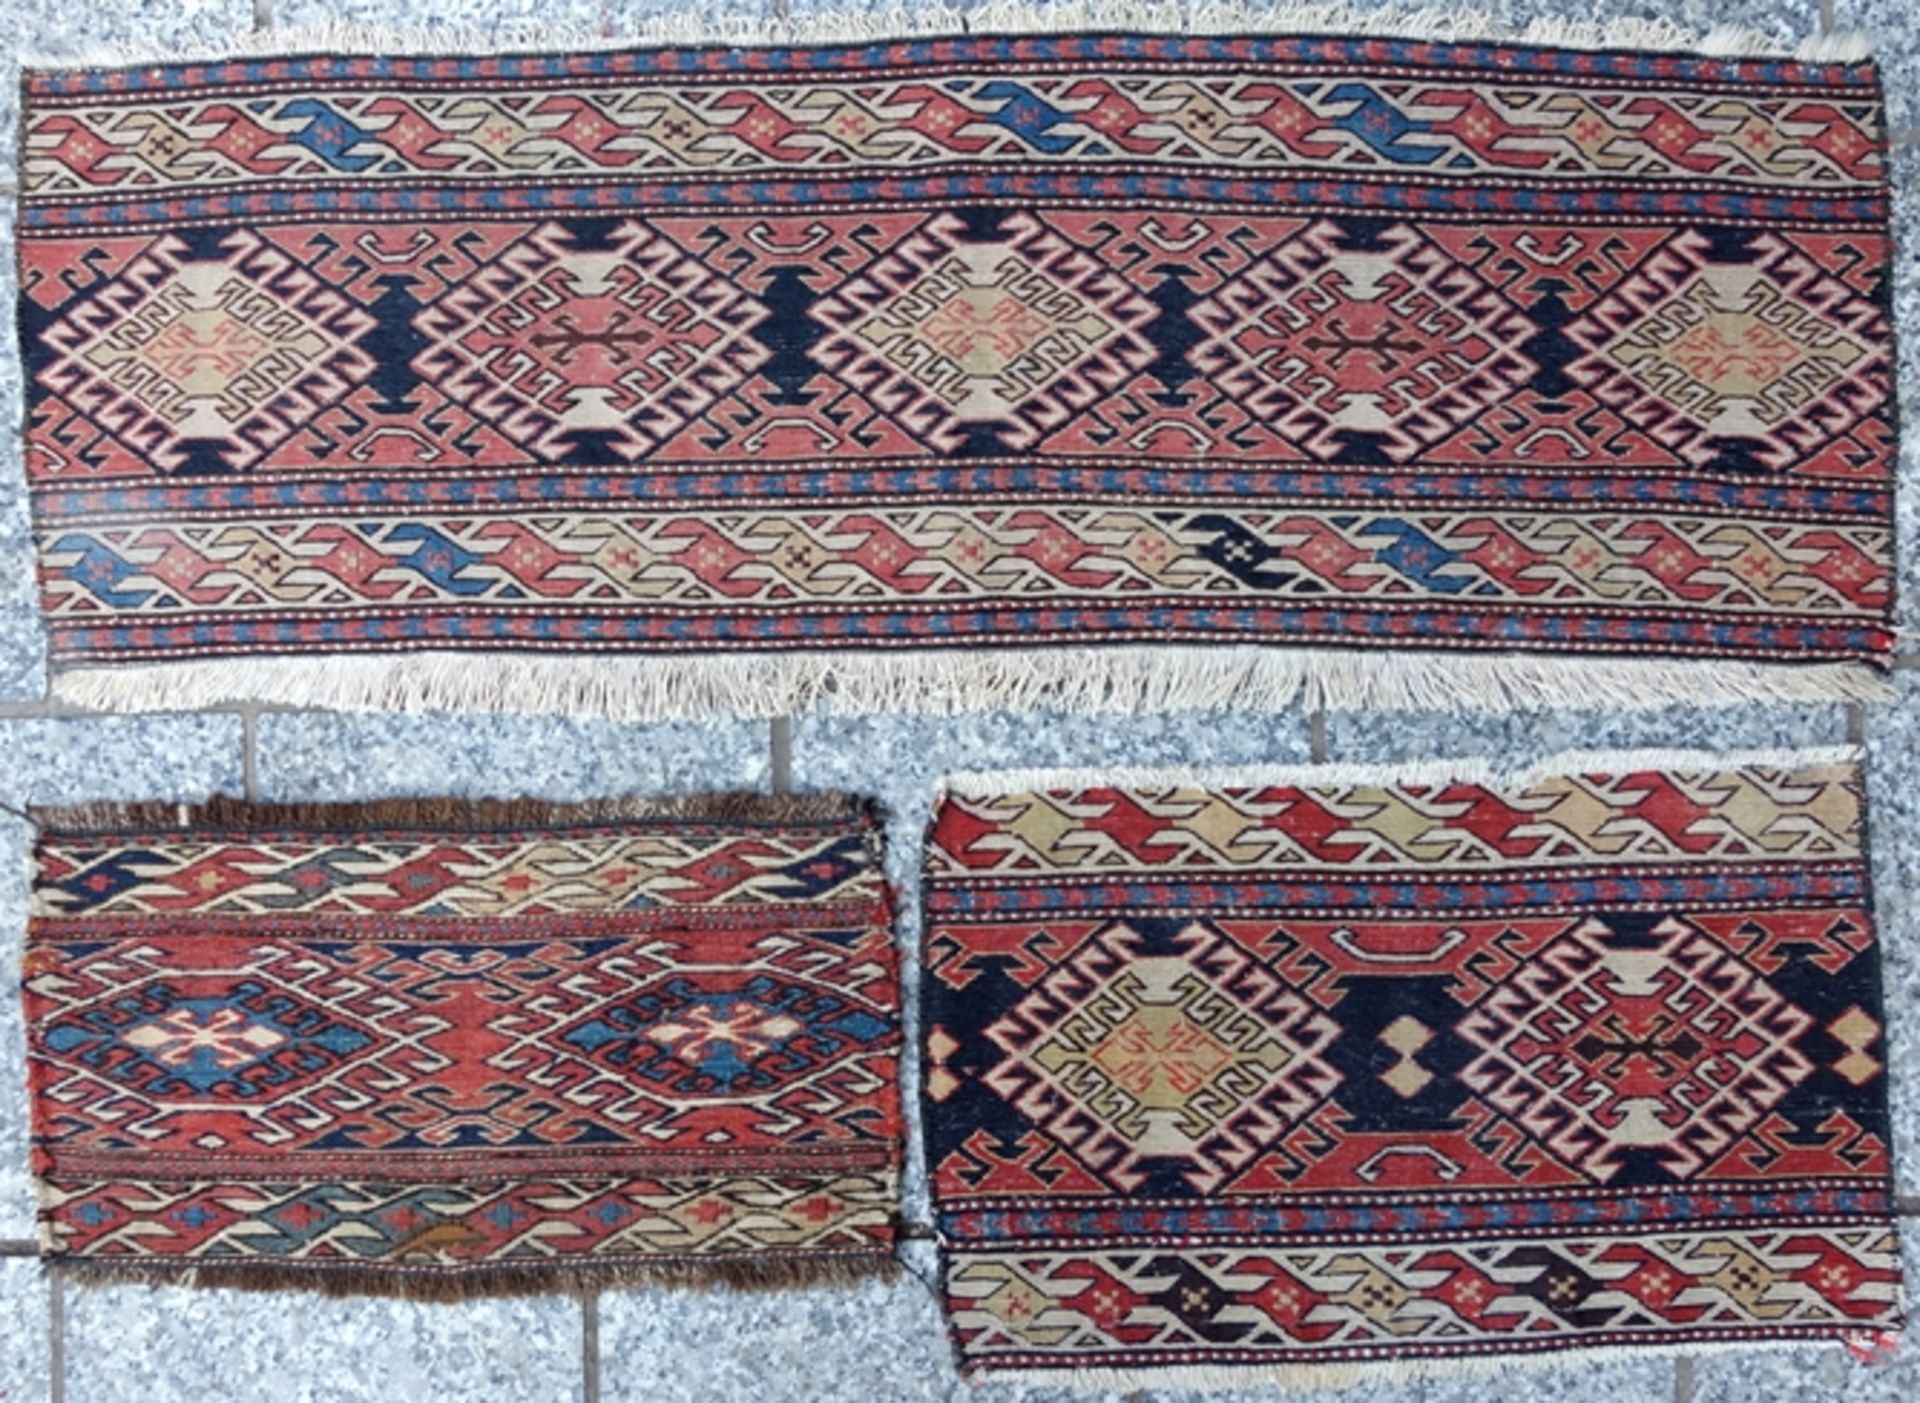 3* kleinformatige Teppiche, Sumak, Iran, Maße: 53*31cm; 48*25cm; 108*35cm 3 * small carpets, Sumak,